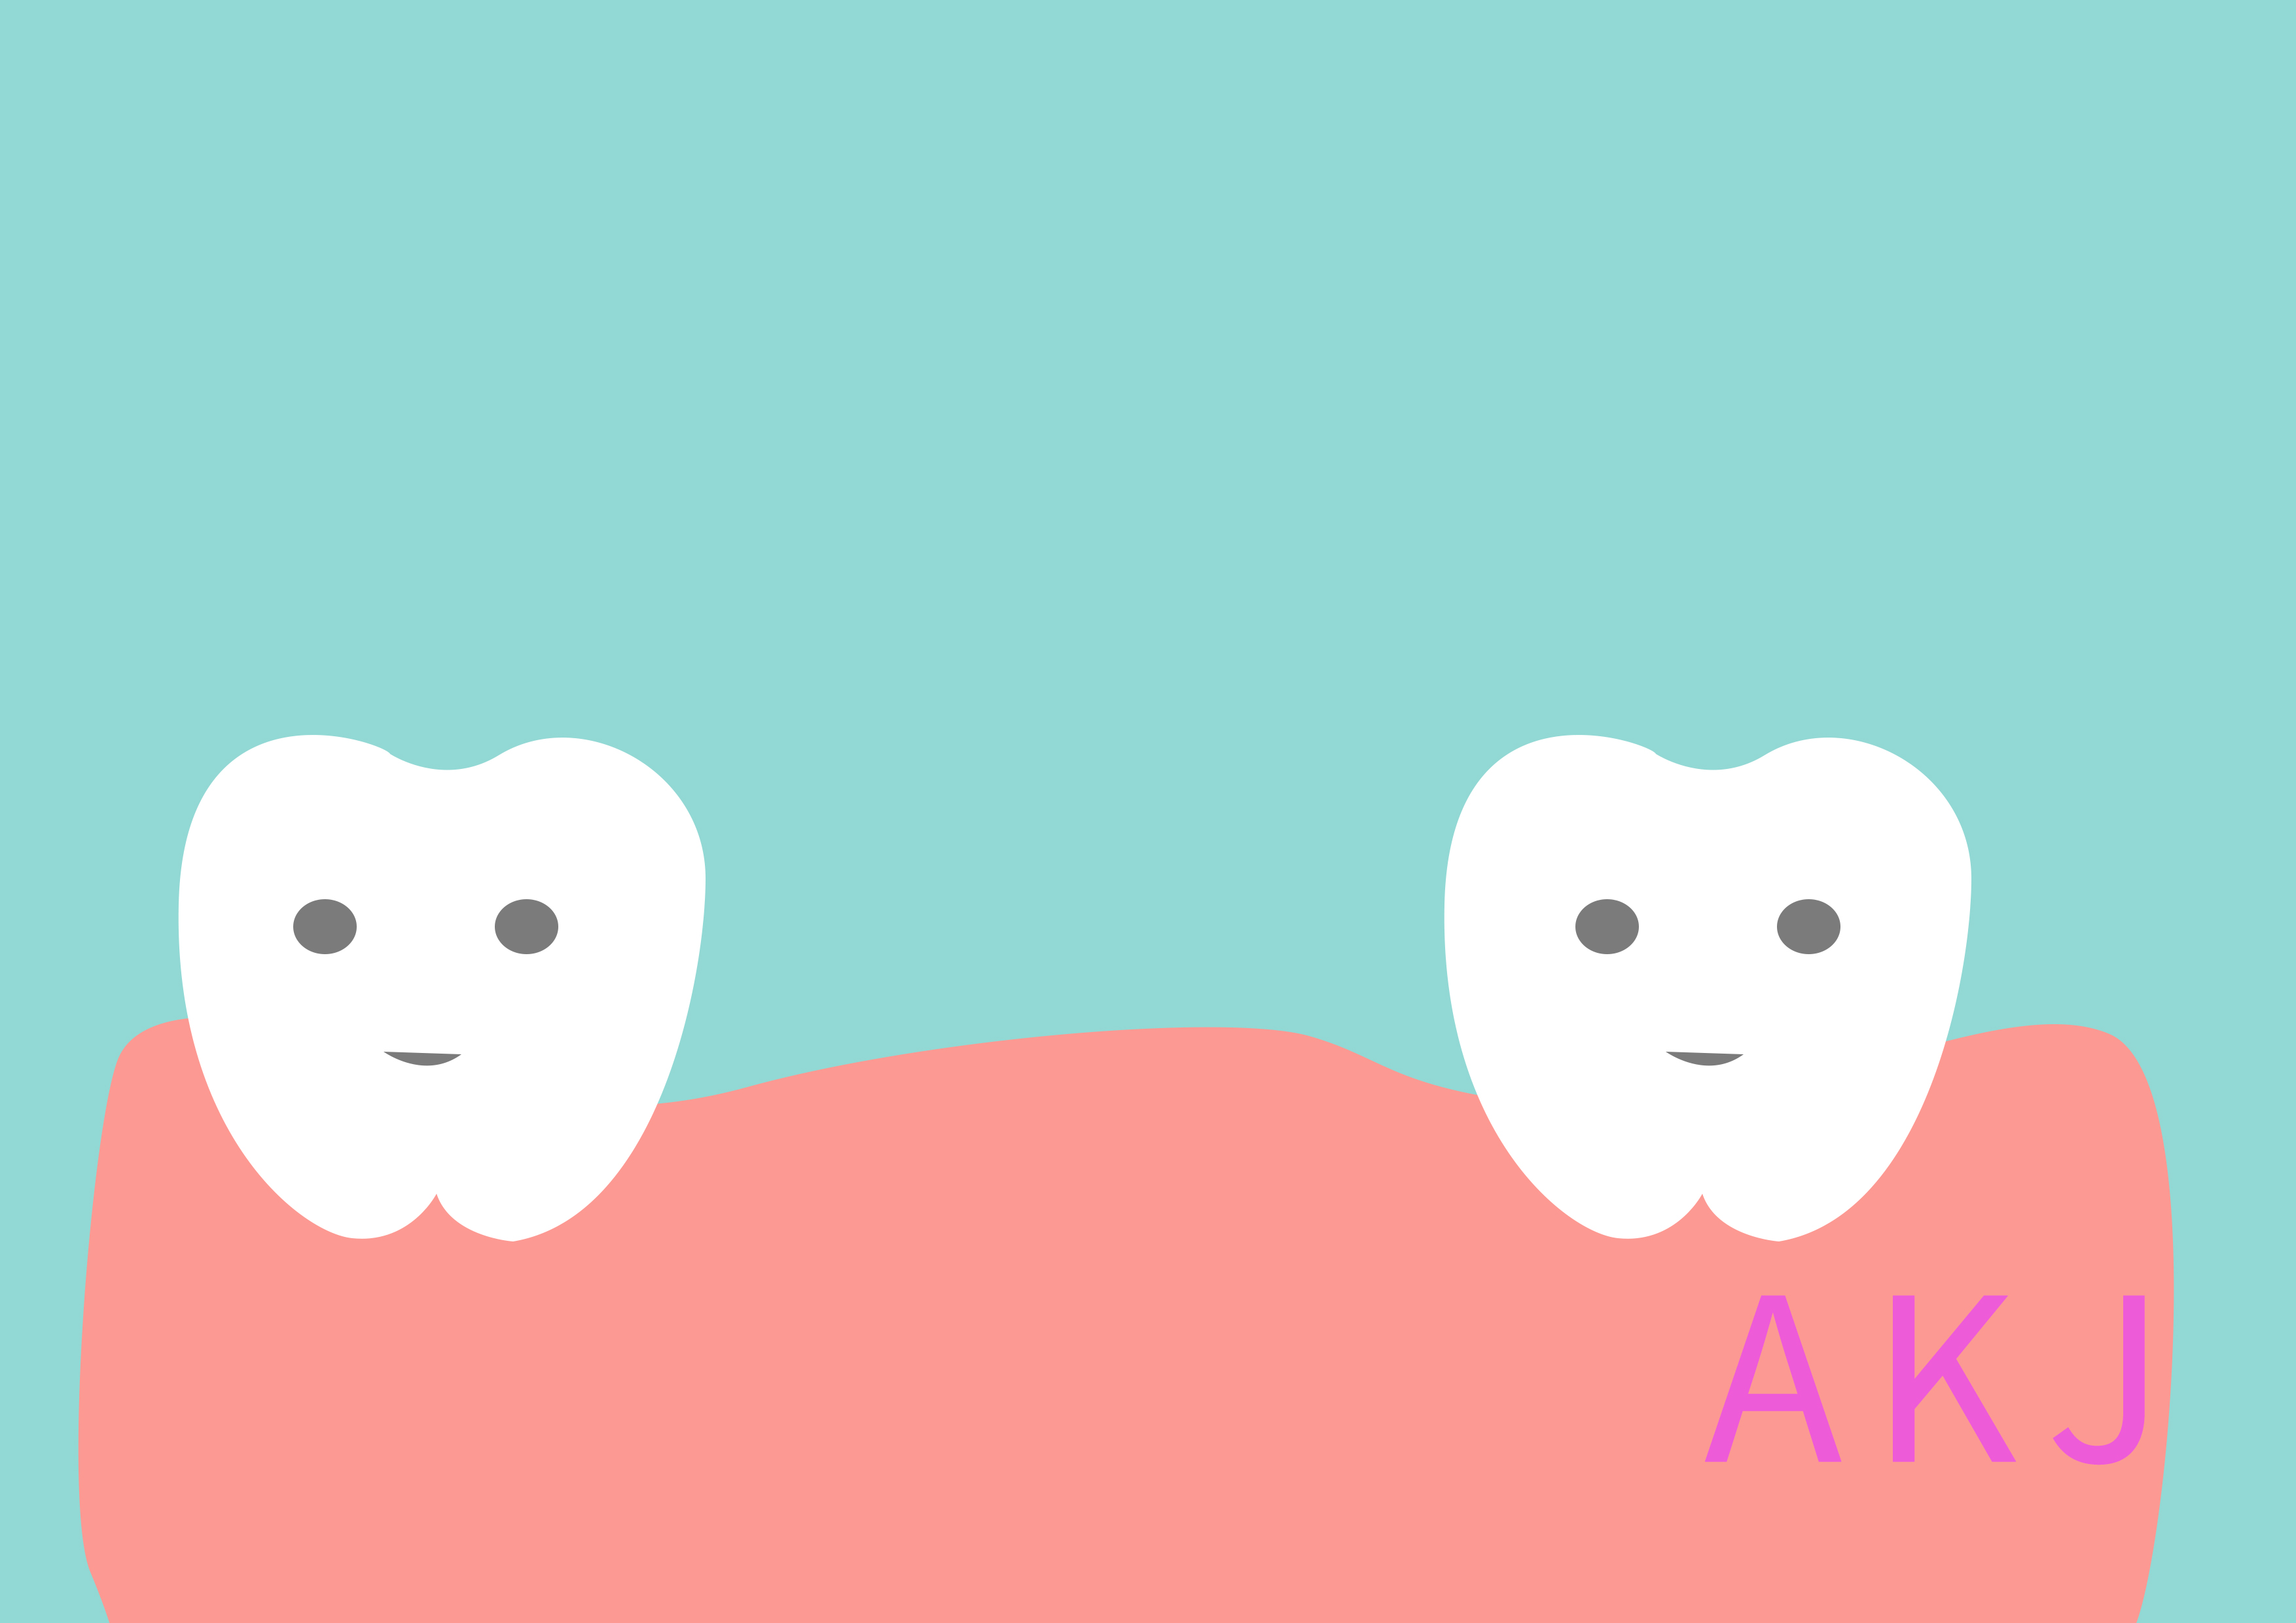 牙齿掉了还能重新长出来?新药物或能助缺牙儿童有机会重新长牙